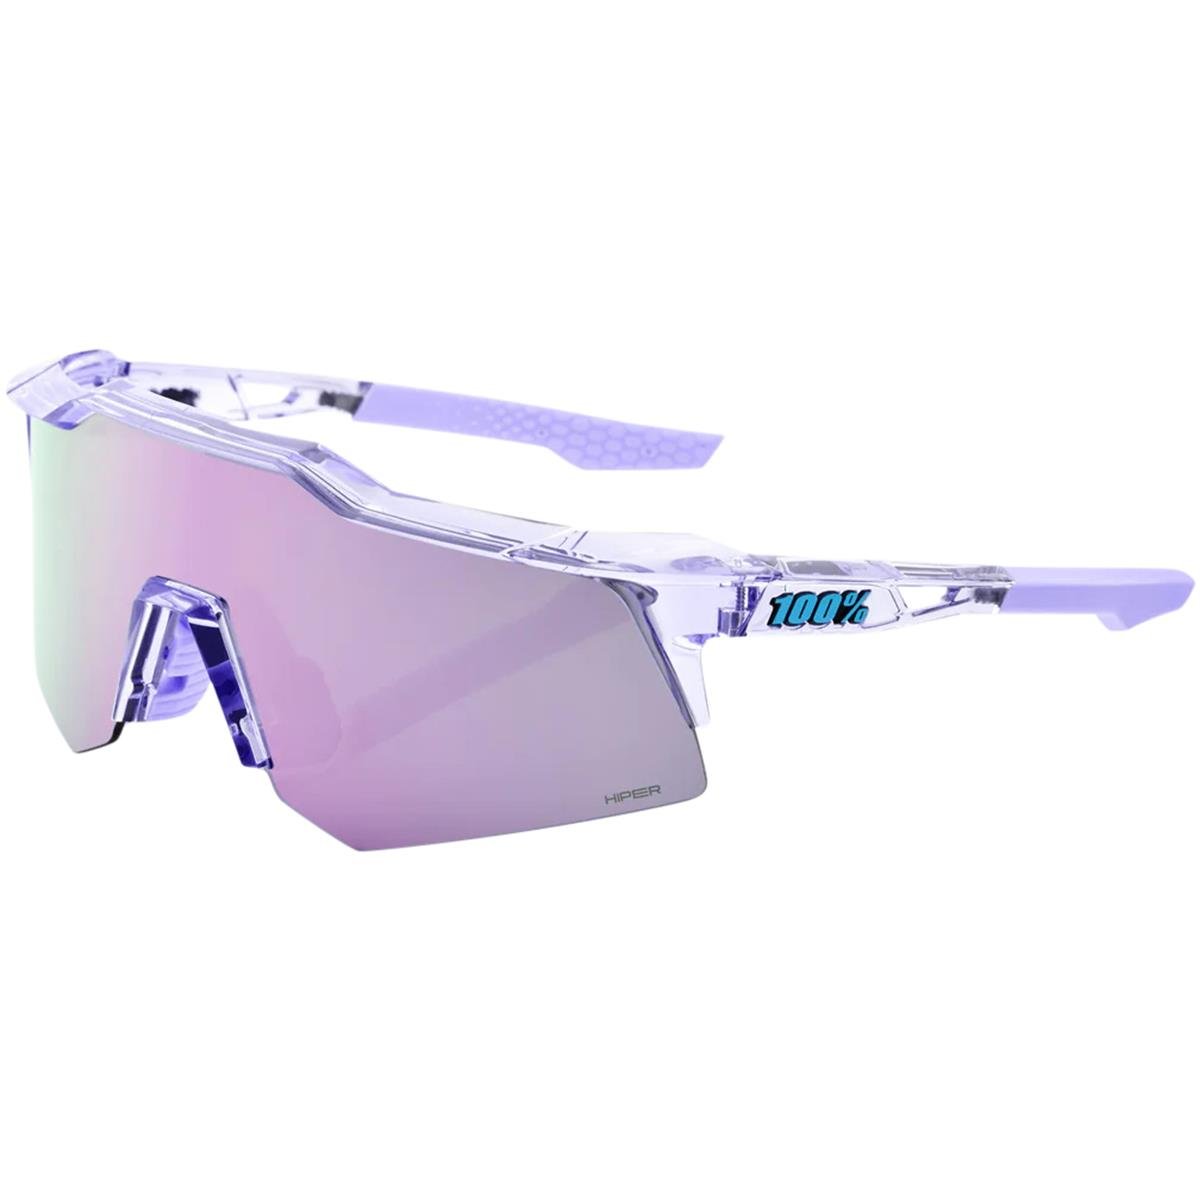 100% MTB-Sportbrille Speedcraft XS Polished Translucent Lavender - HiPER Lavender Mirror Lens